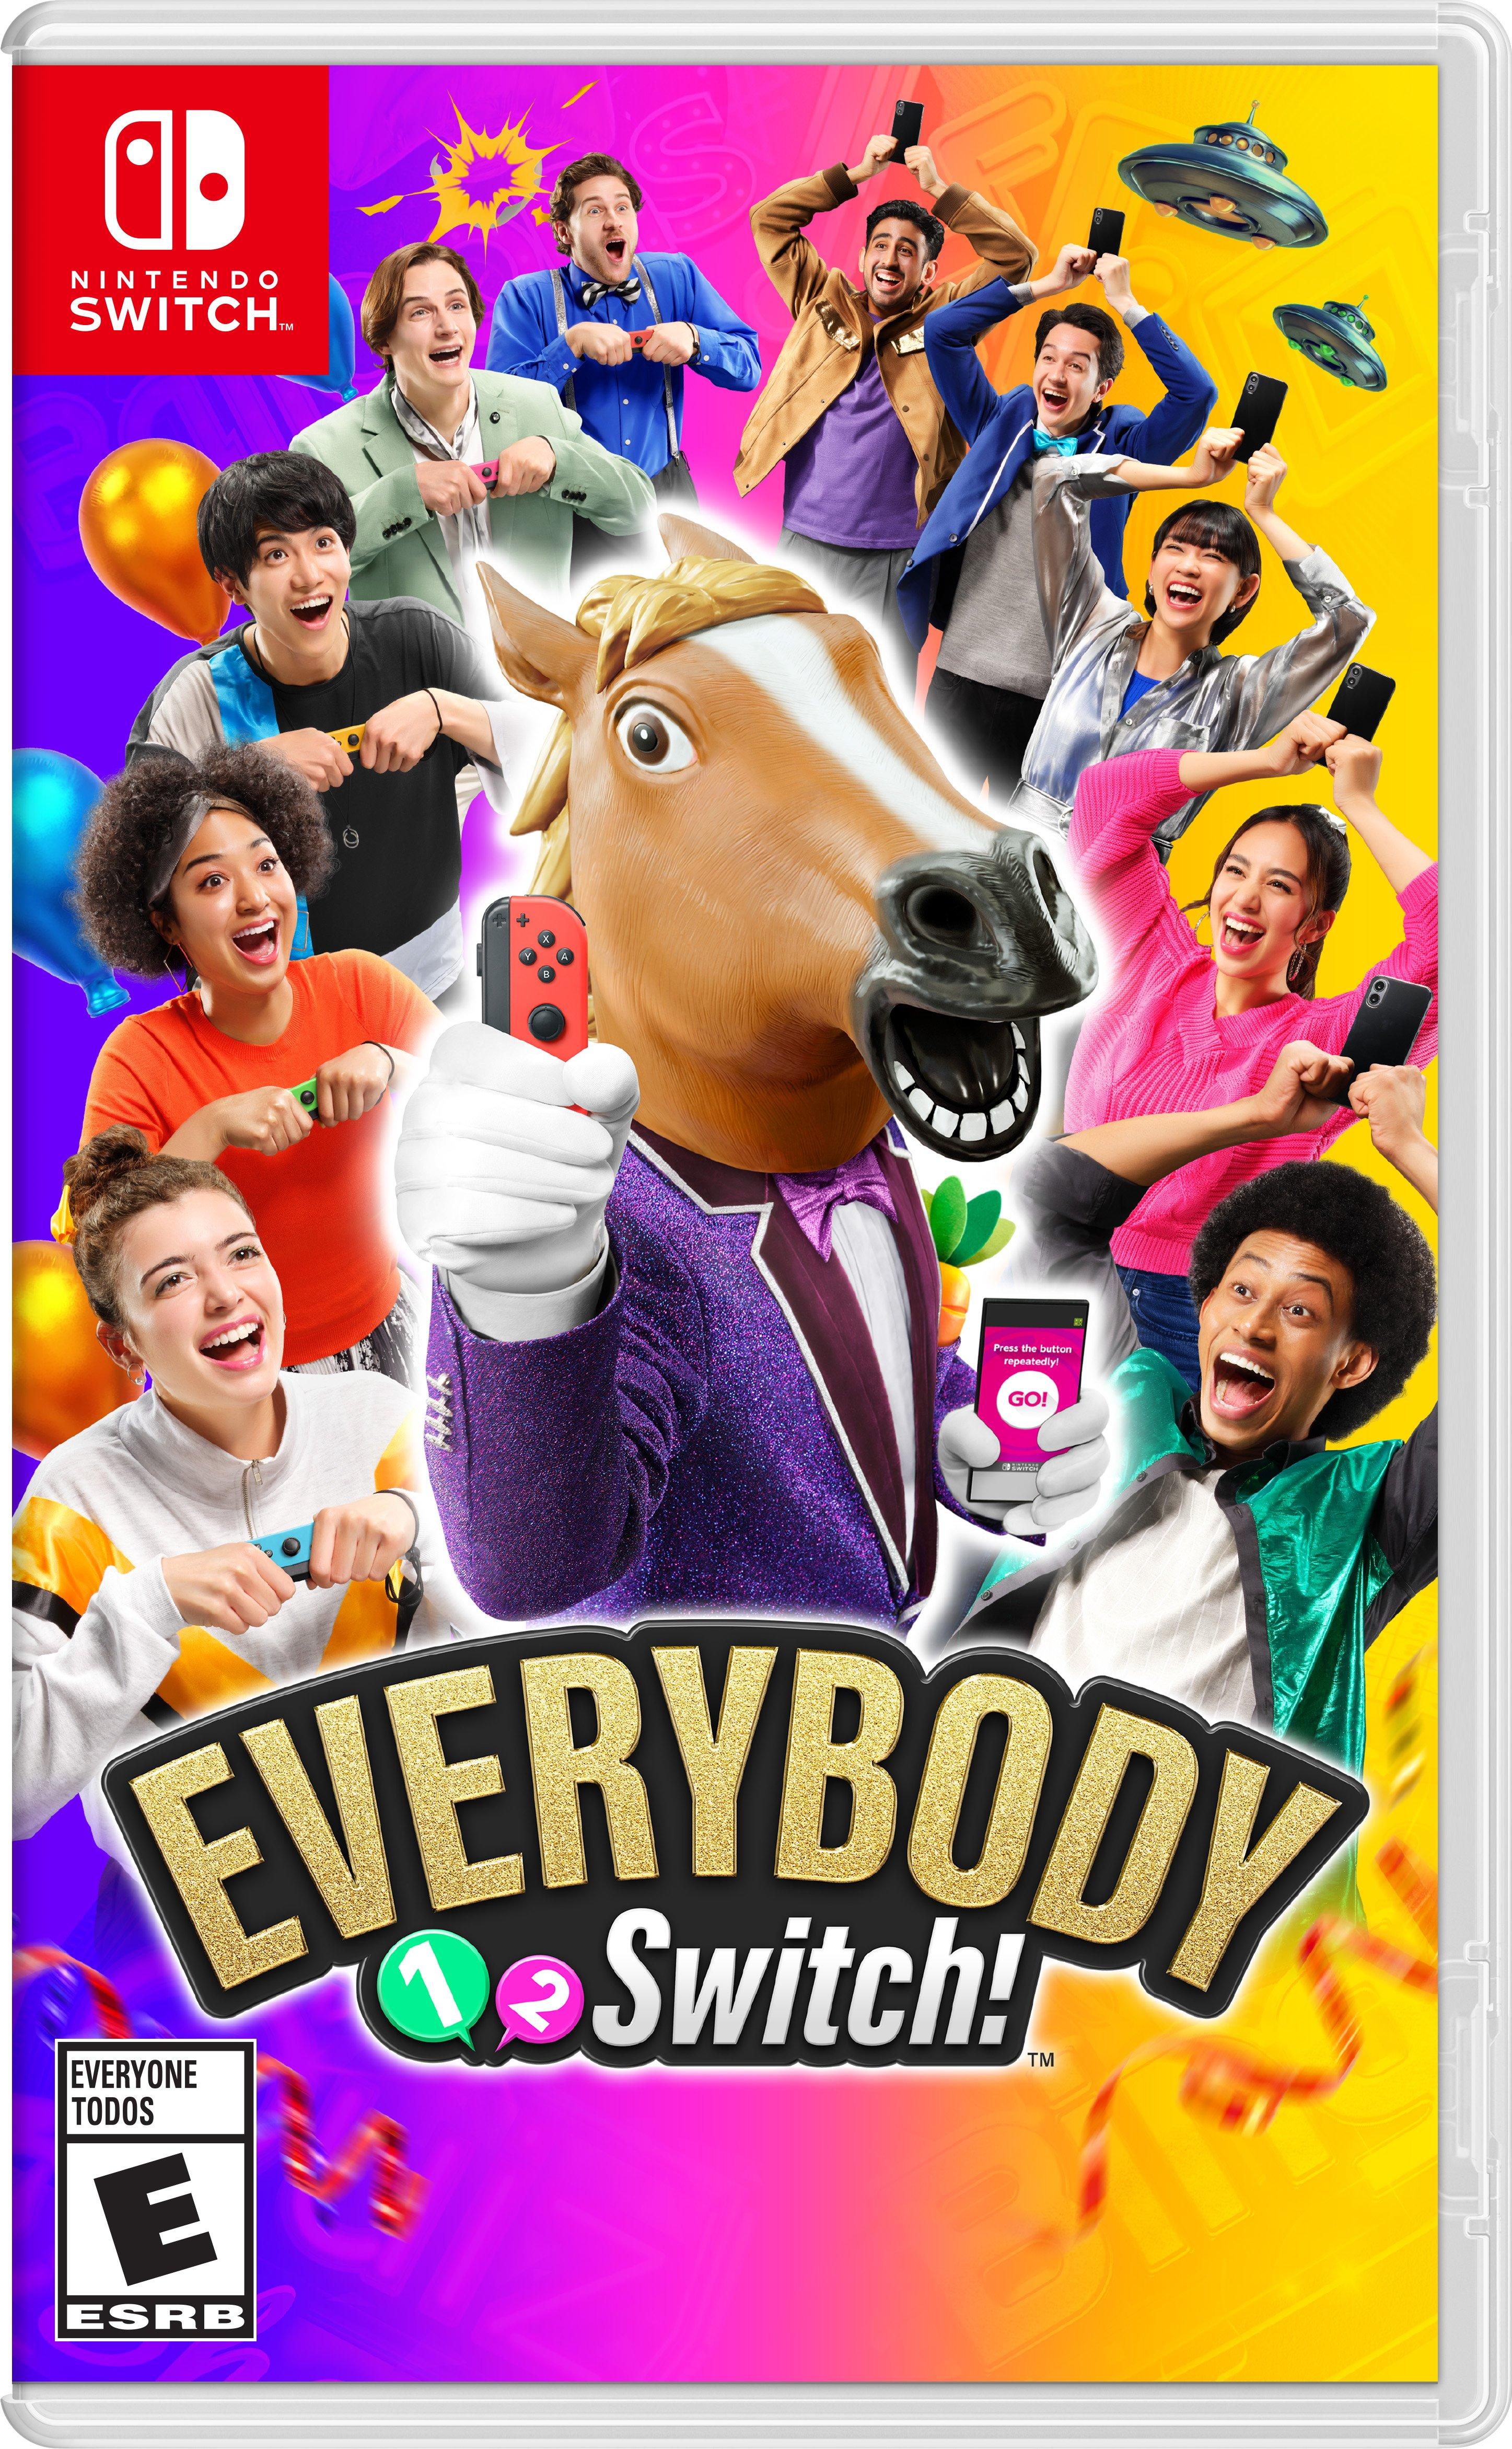 Nintendo - Everybody 1-2-Switch! - Switch